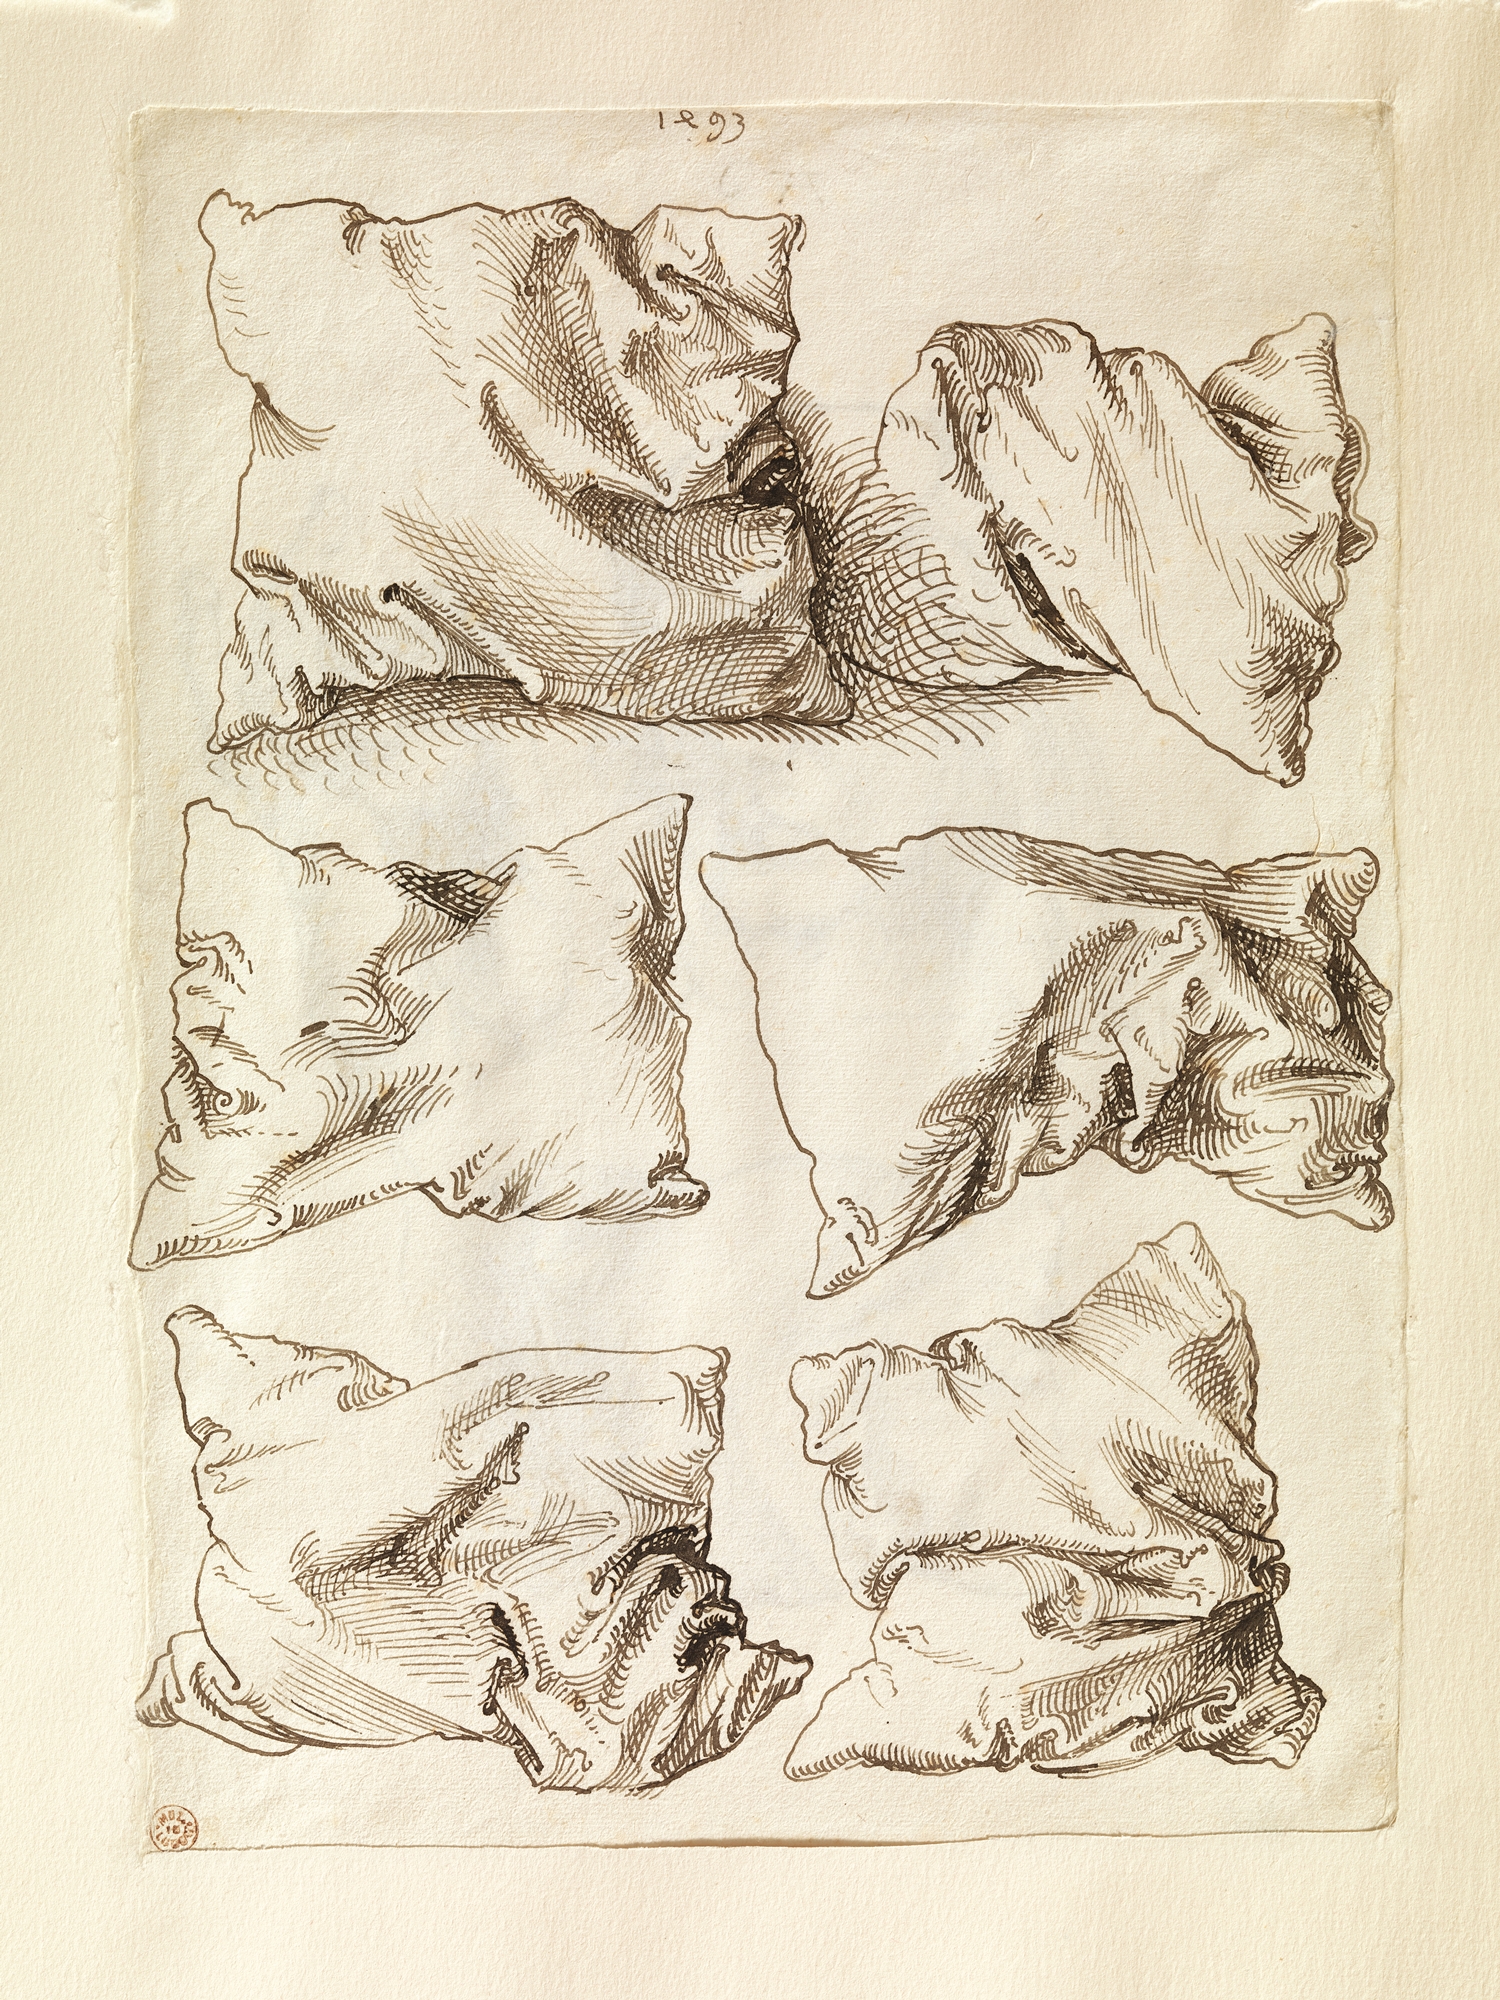 Seis Estudos de Travesseiros by Albrecht Dürer - 1493 